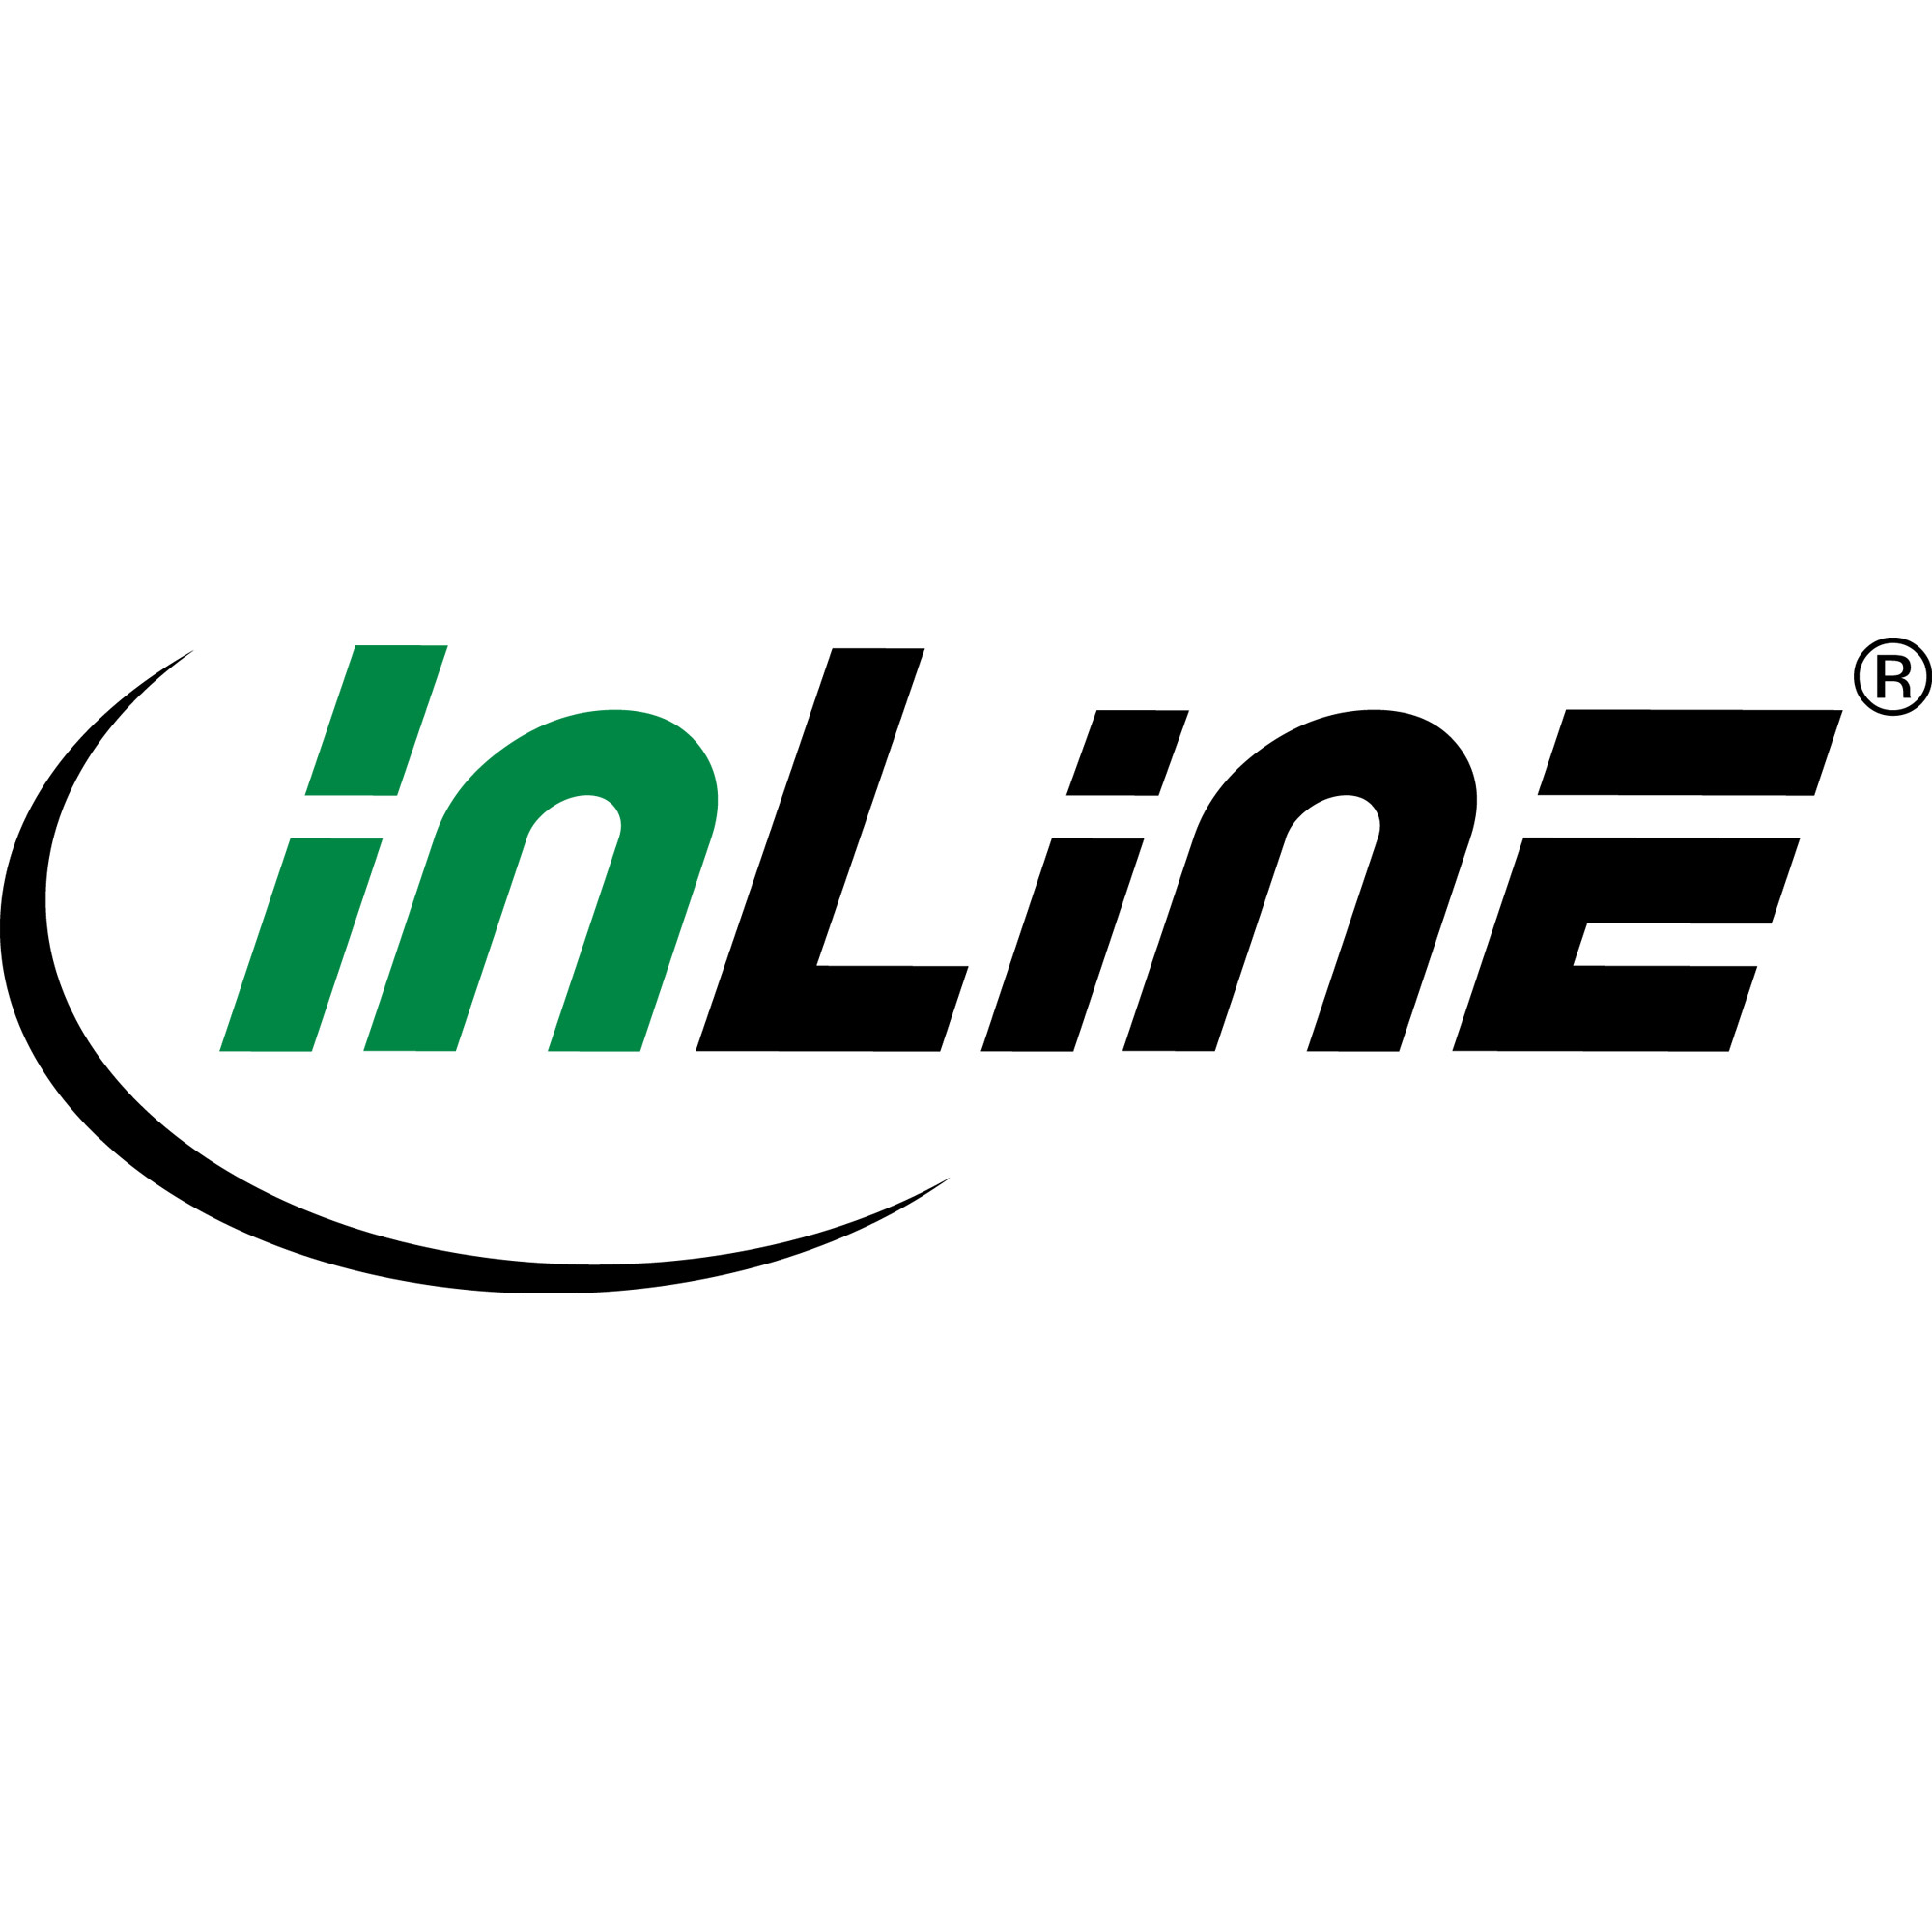 InLine 55457G tapis de souris Vert